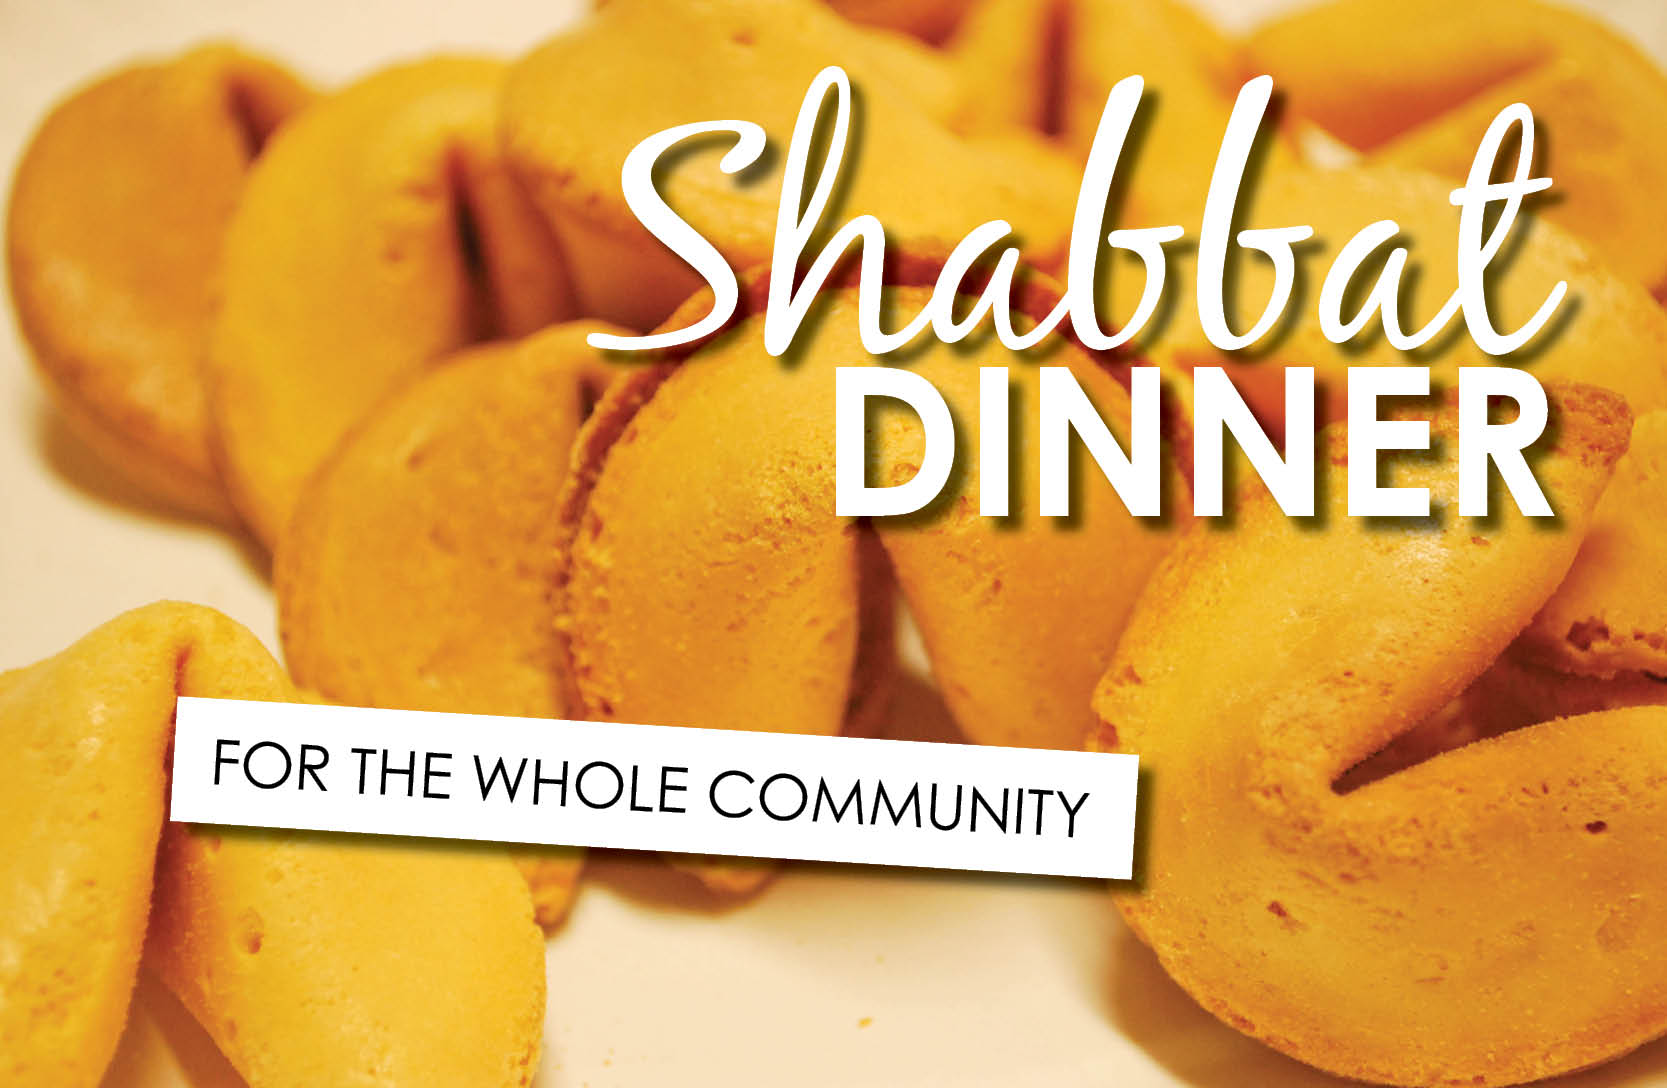 Community Shabbat Dinner